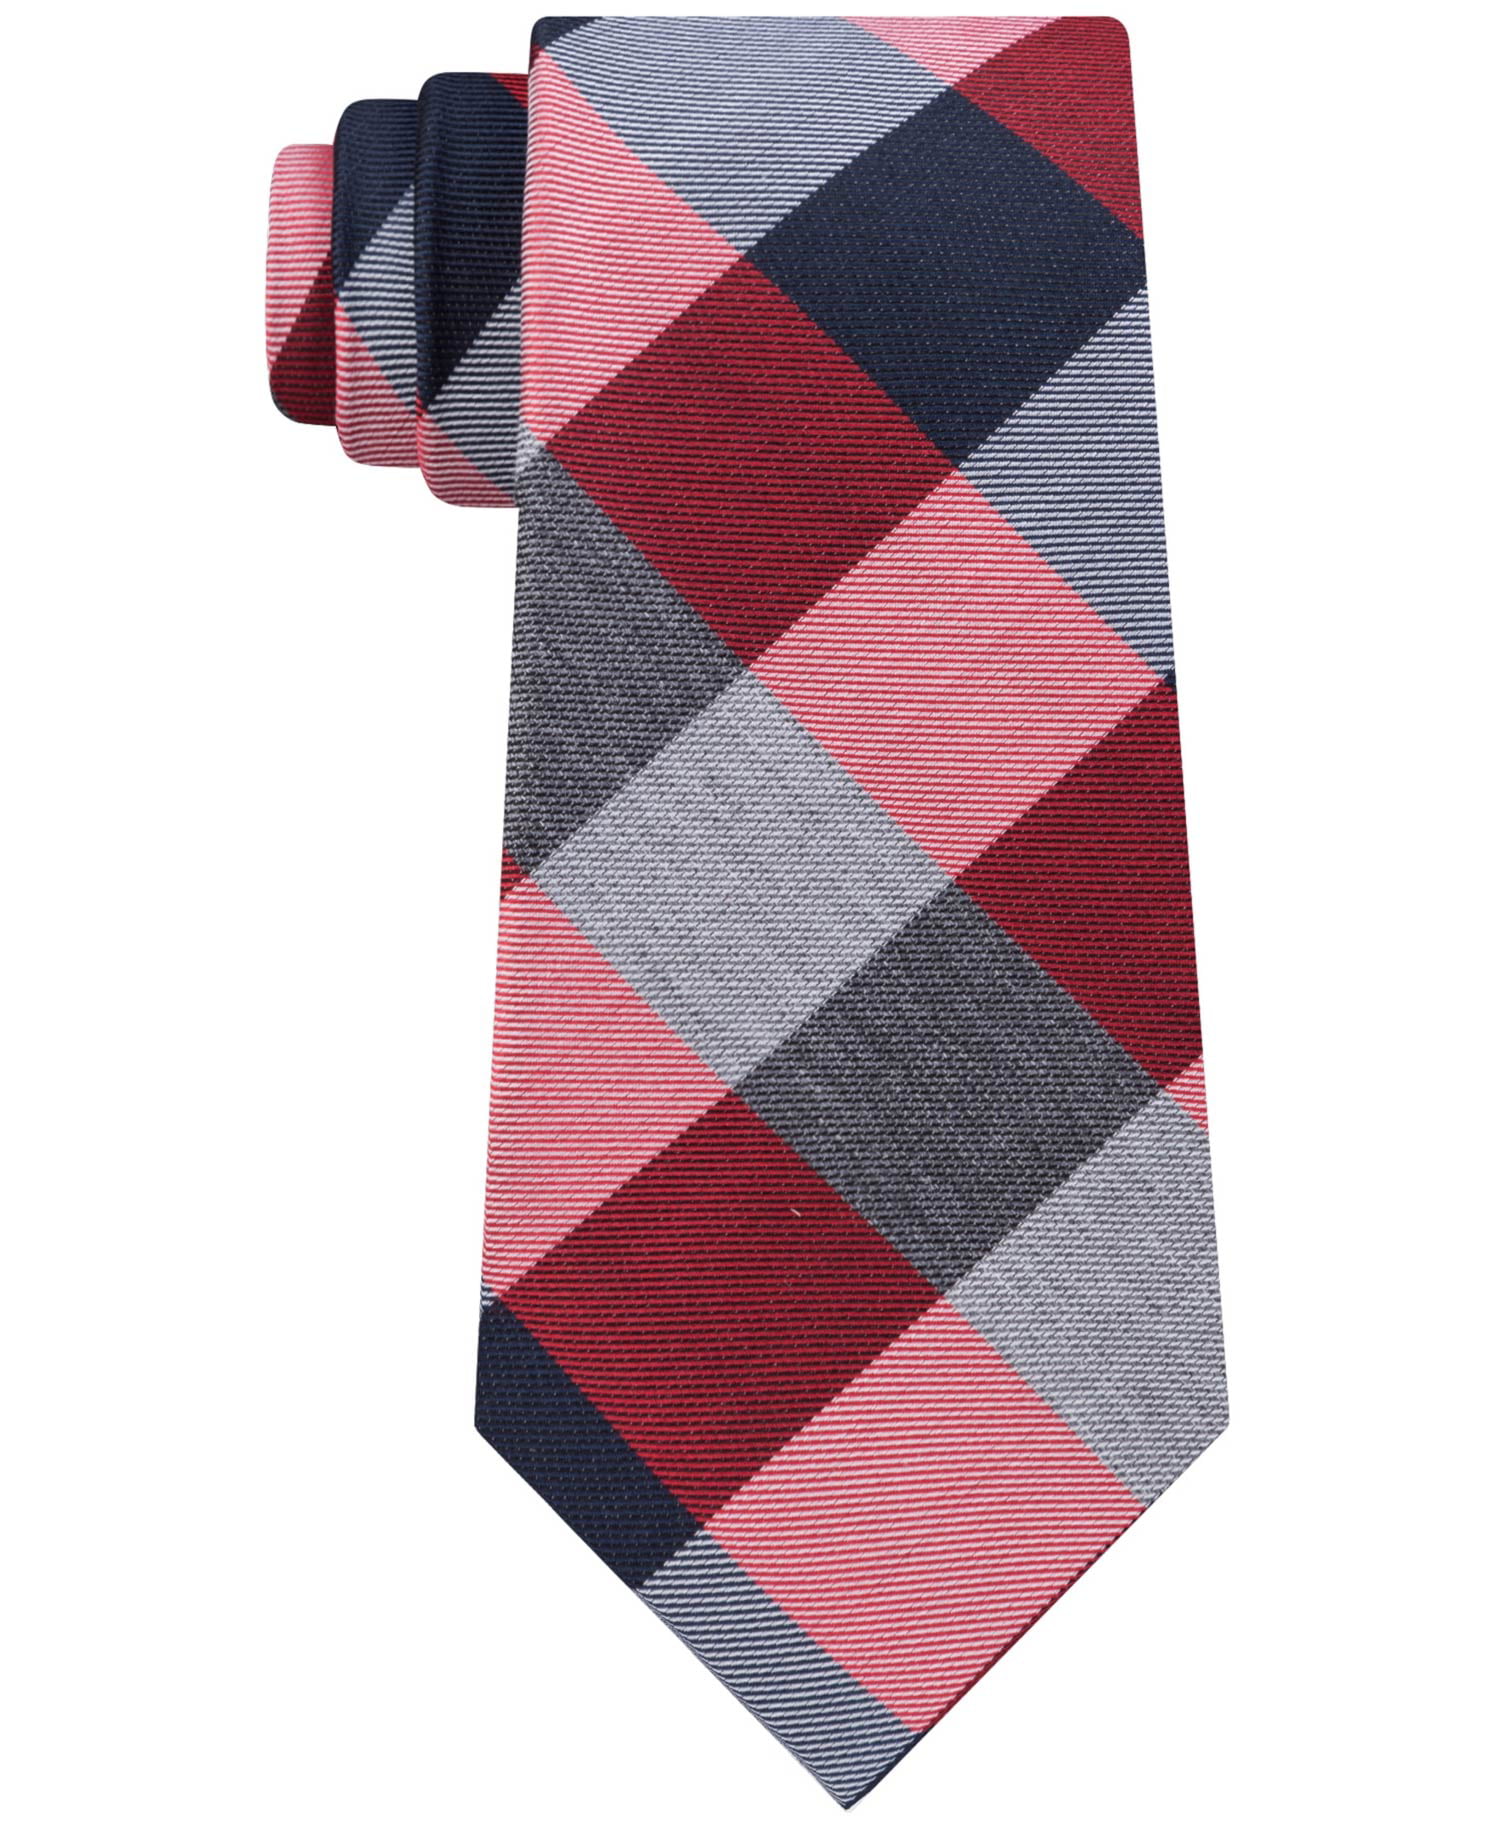 Hilfiger Mens Plaid Tie Red Necktie - Walmart.com